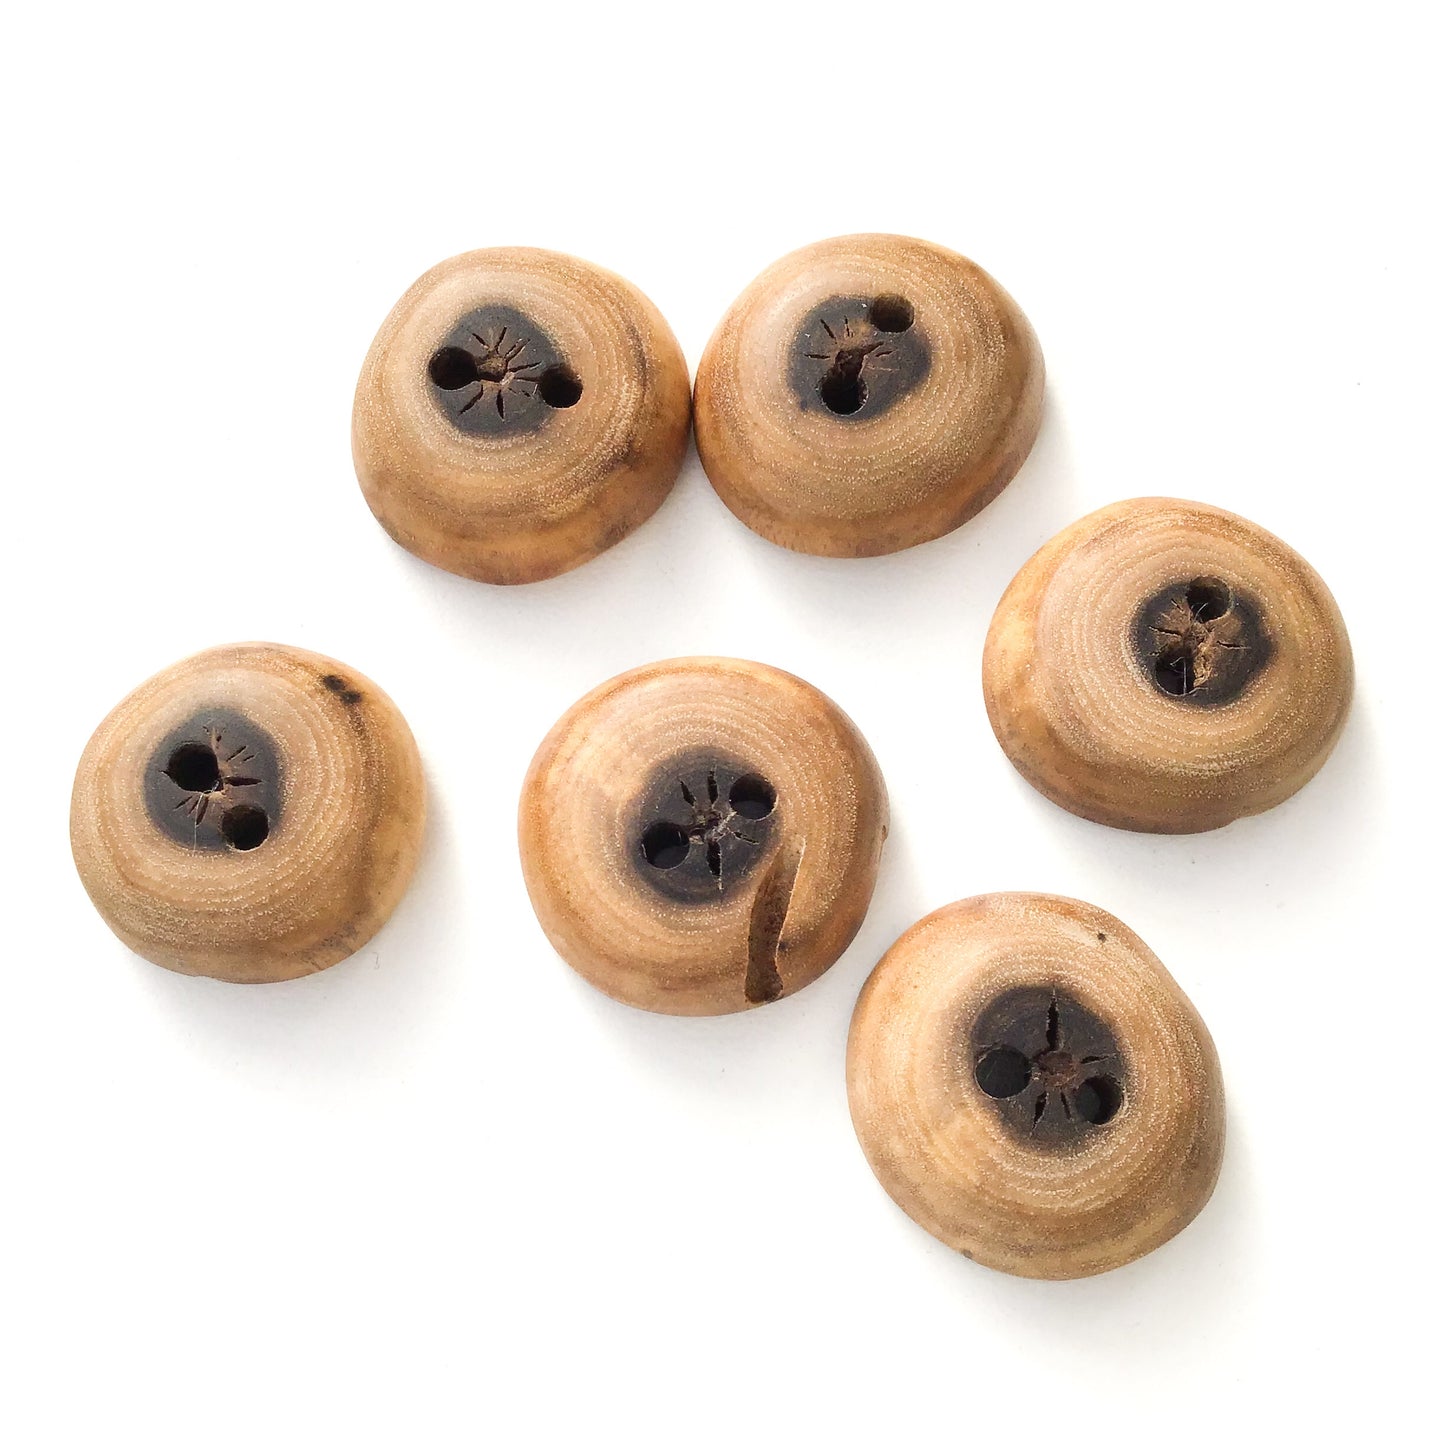 Black Walnut Wood Buttons - Walnut Sap & Heartwood Buttons - 7/8" - 6 Pack